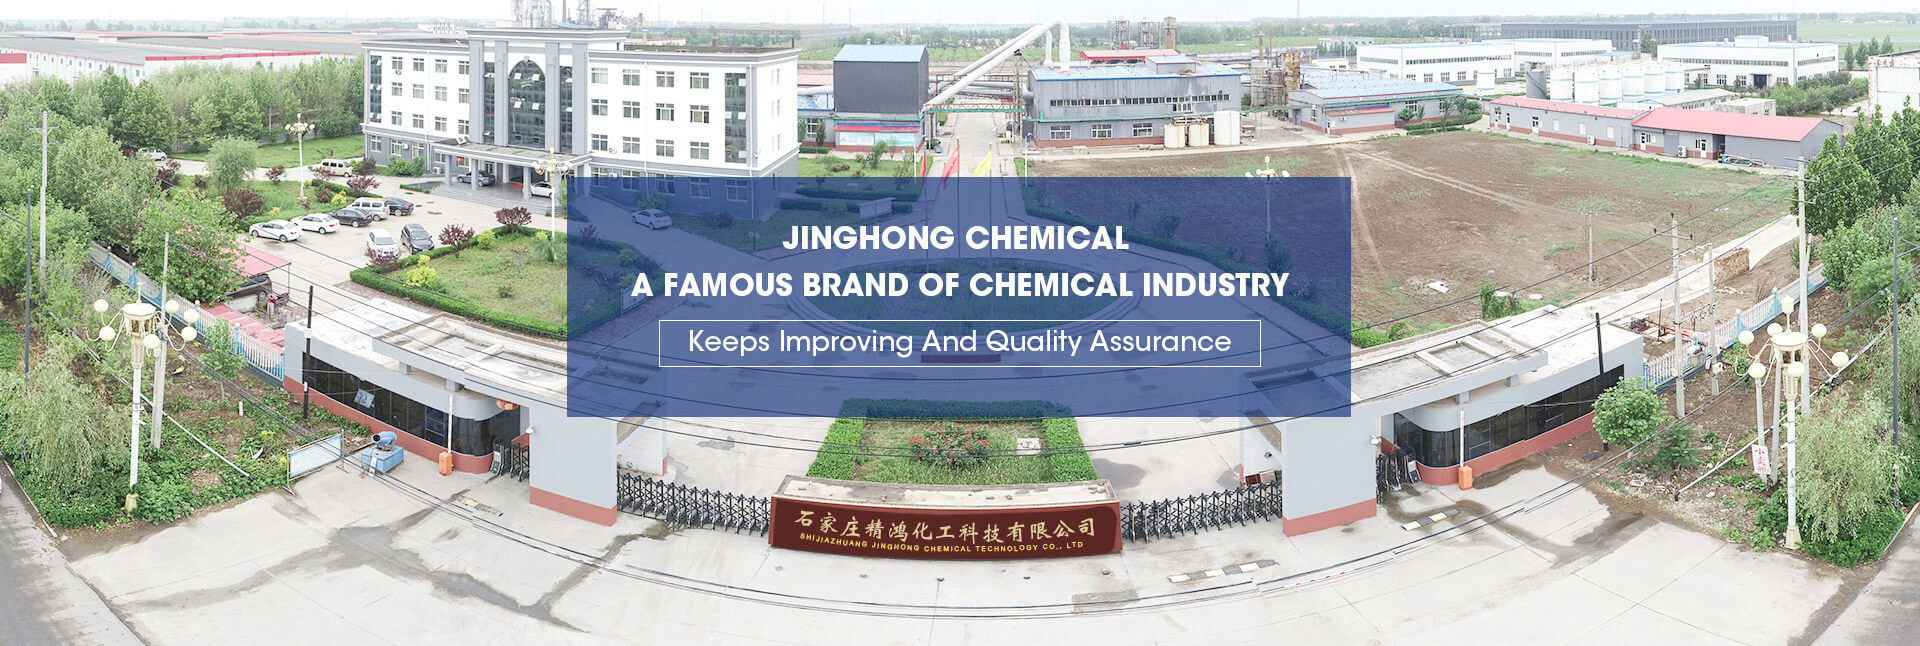 Shijiazhuang Jinghong Chemical Technology Co., Ltd.